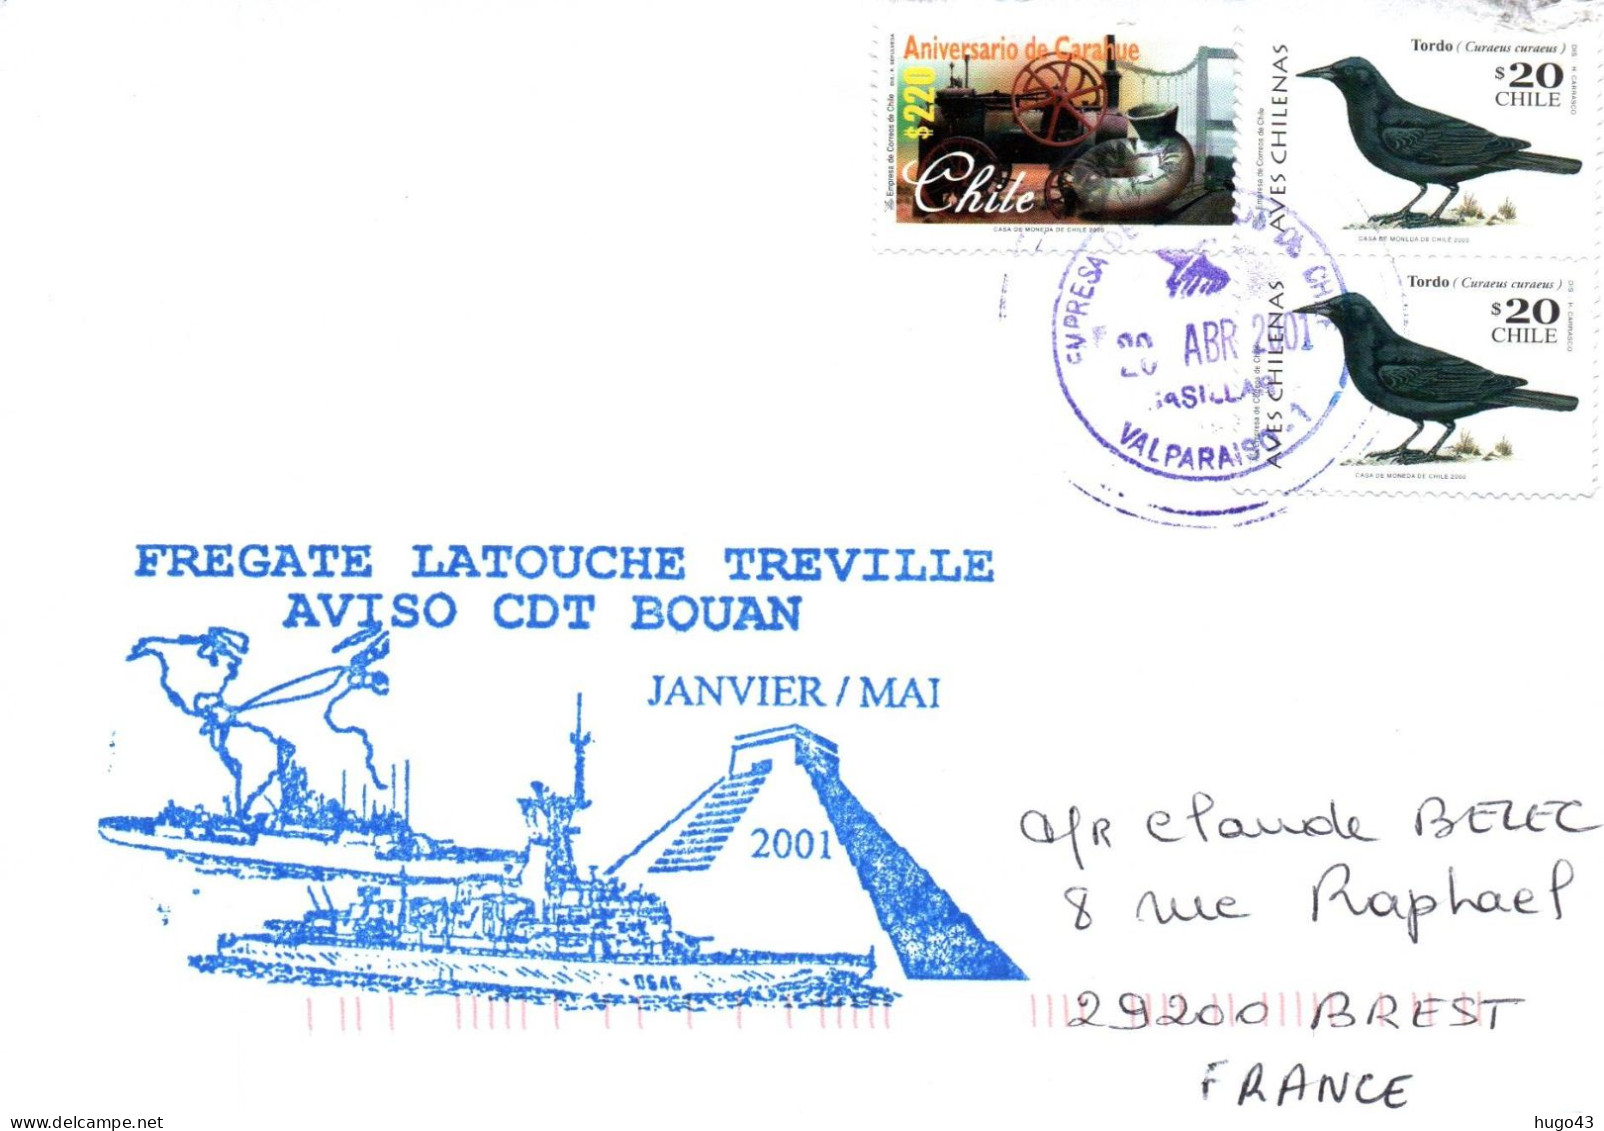 ENVELOPPE AVEC CACHET FREGATE LATOUCHE TREVILLE AVISO CDT BOUAN JANVIER / MAI 2001 - ESCALE AU CHILI LE 20/04/2001 - Correo Naval